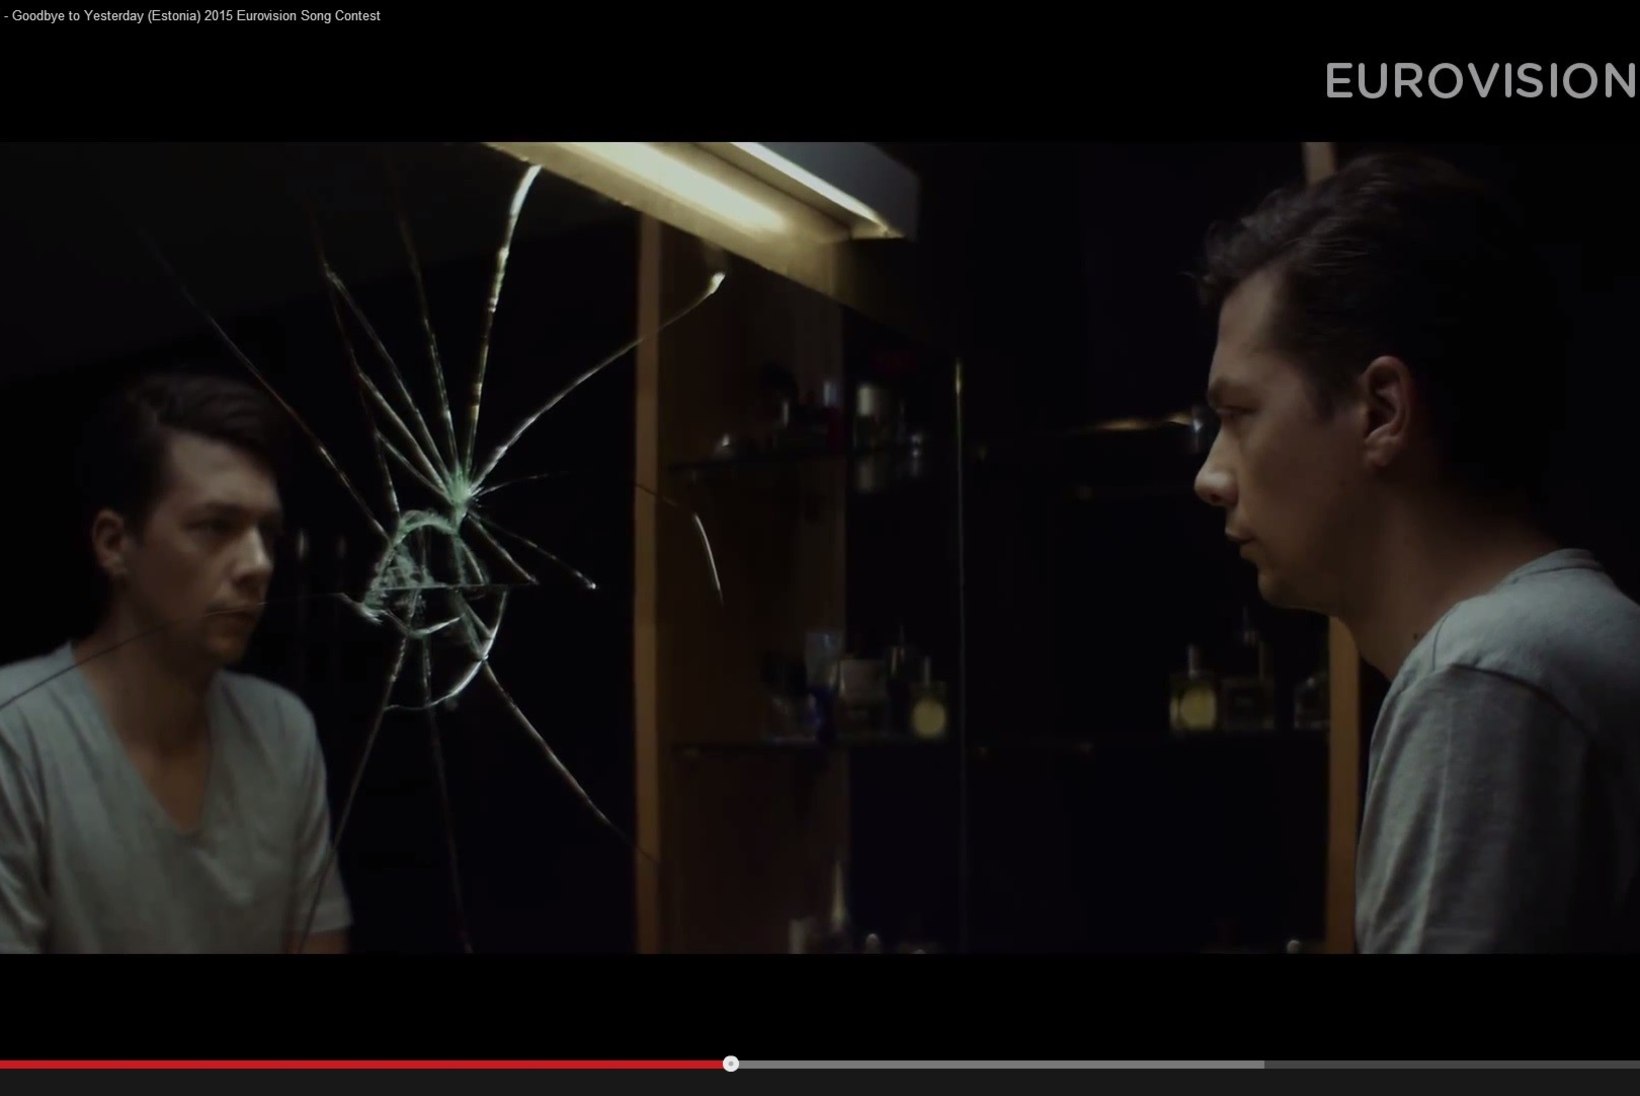 ANTROPOLOOG: meie eurolaulu video on täis seksismi ja vägivaldset käitumist